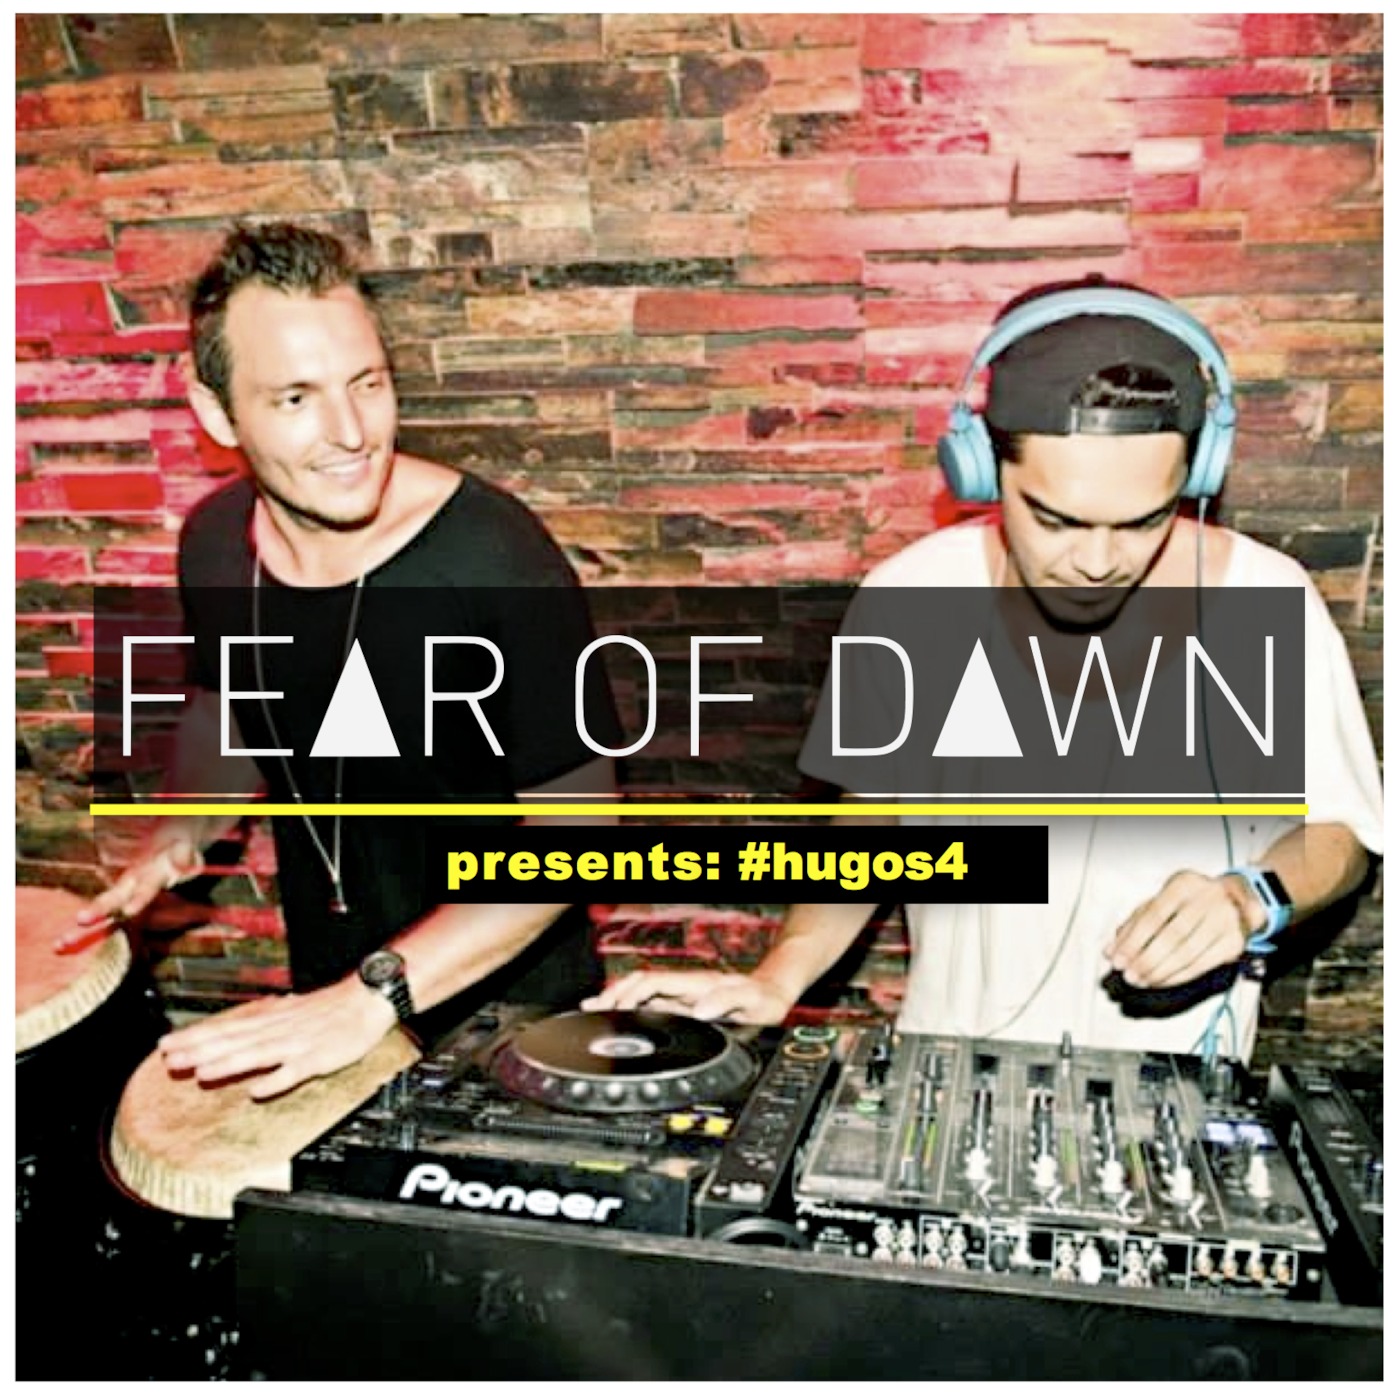 Hugos Saturdays Presented by Fear of Dawn #4 (#hugos4)